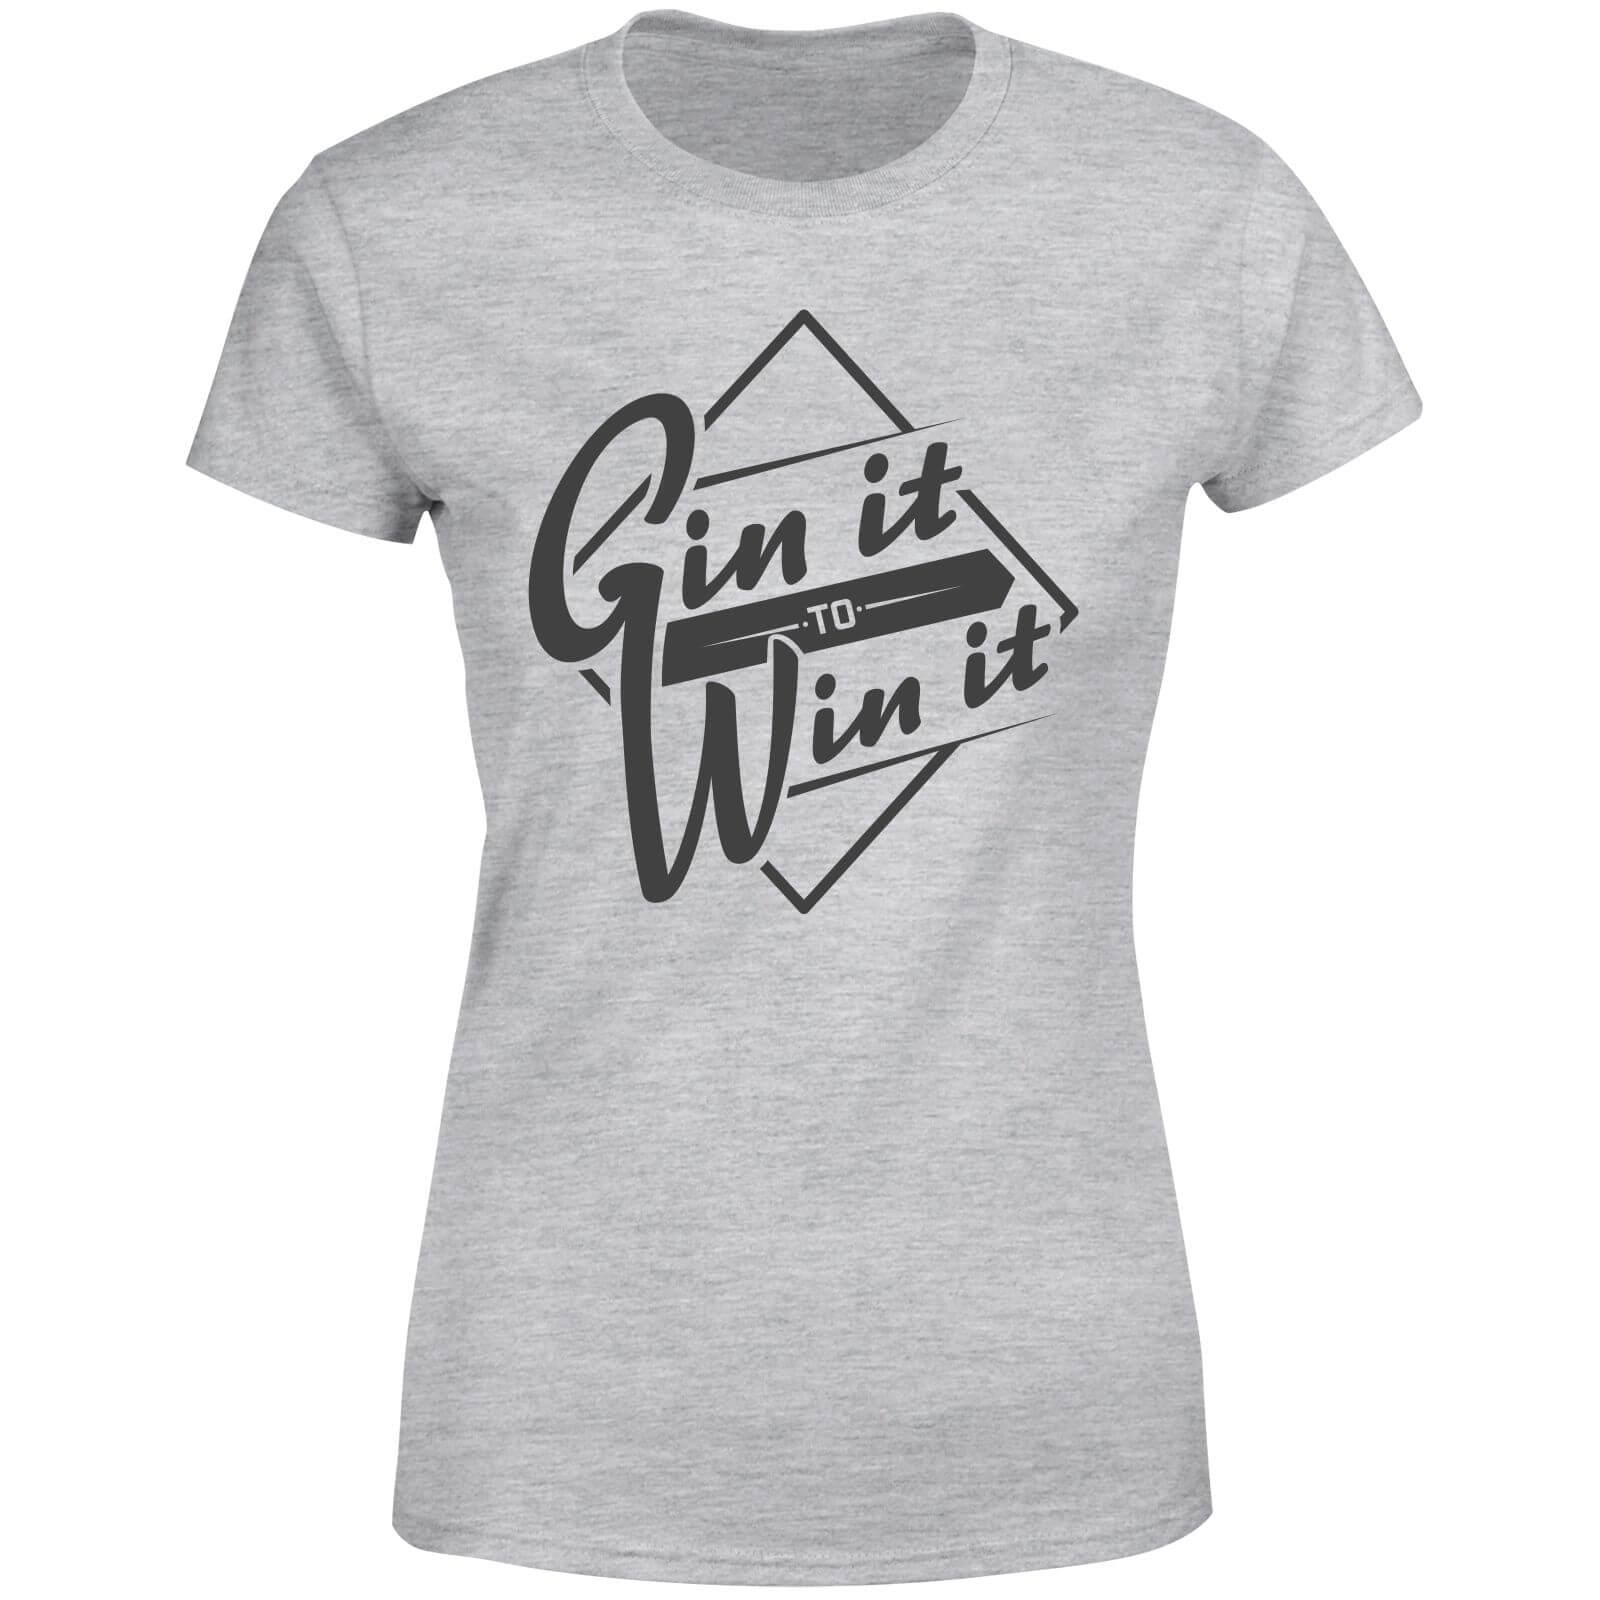 Gin it to Win it Women's T-Shirt - Grey - S - Grey